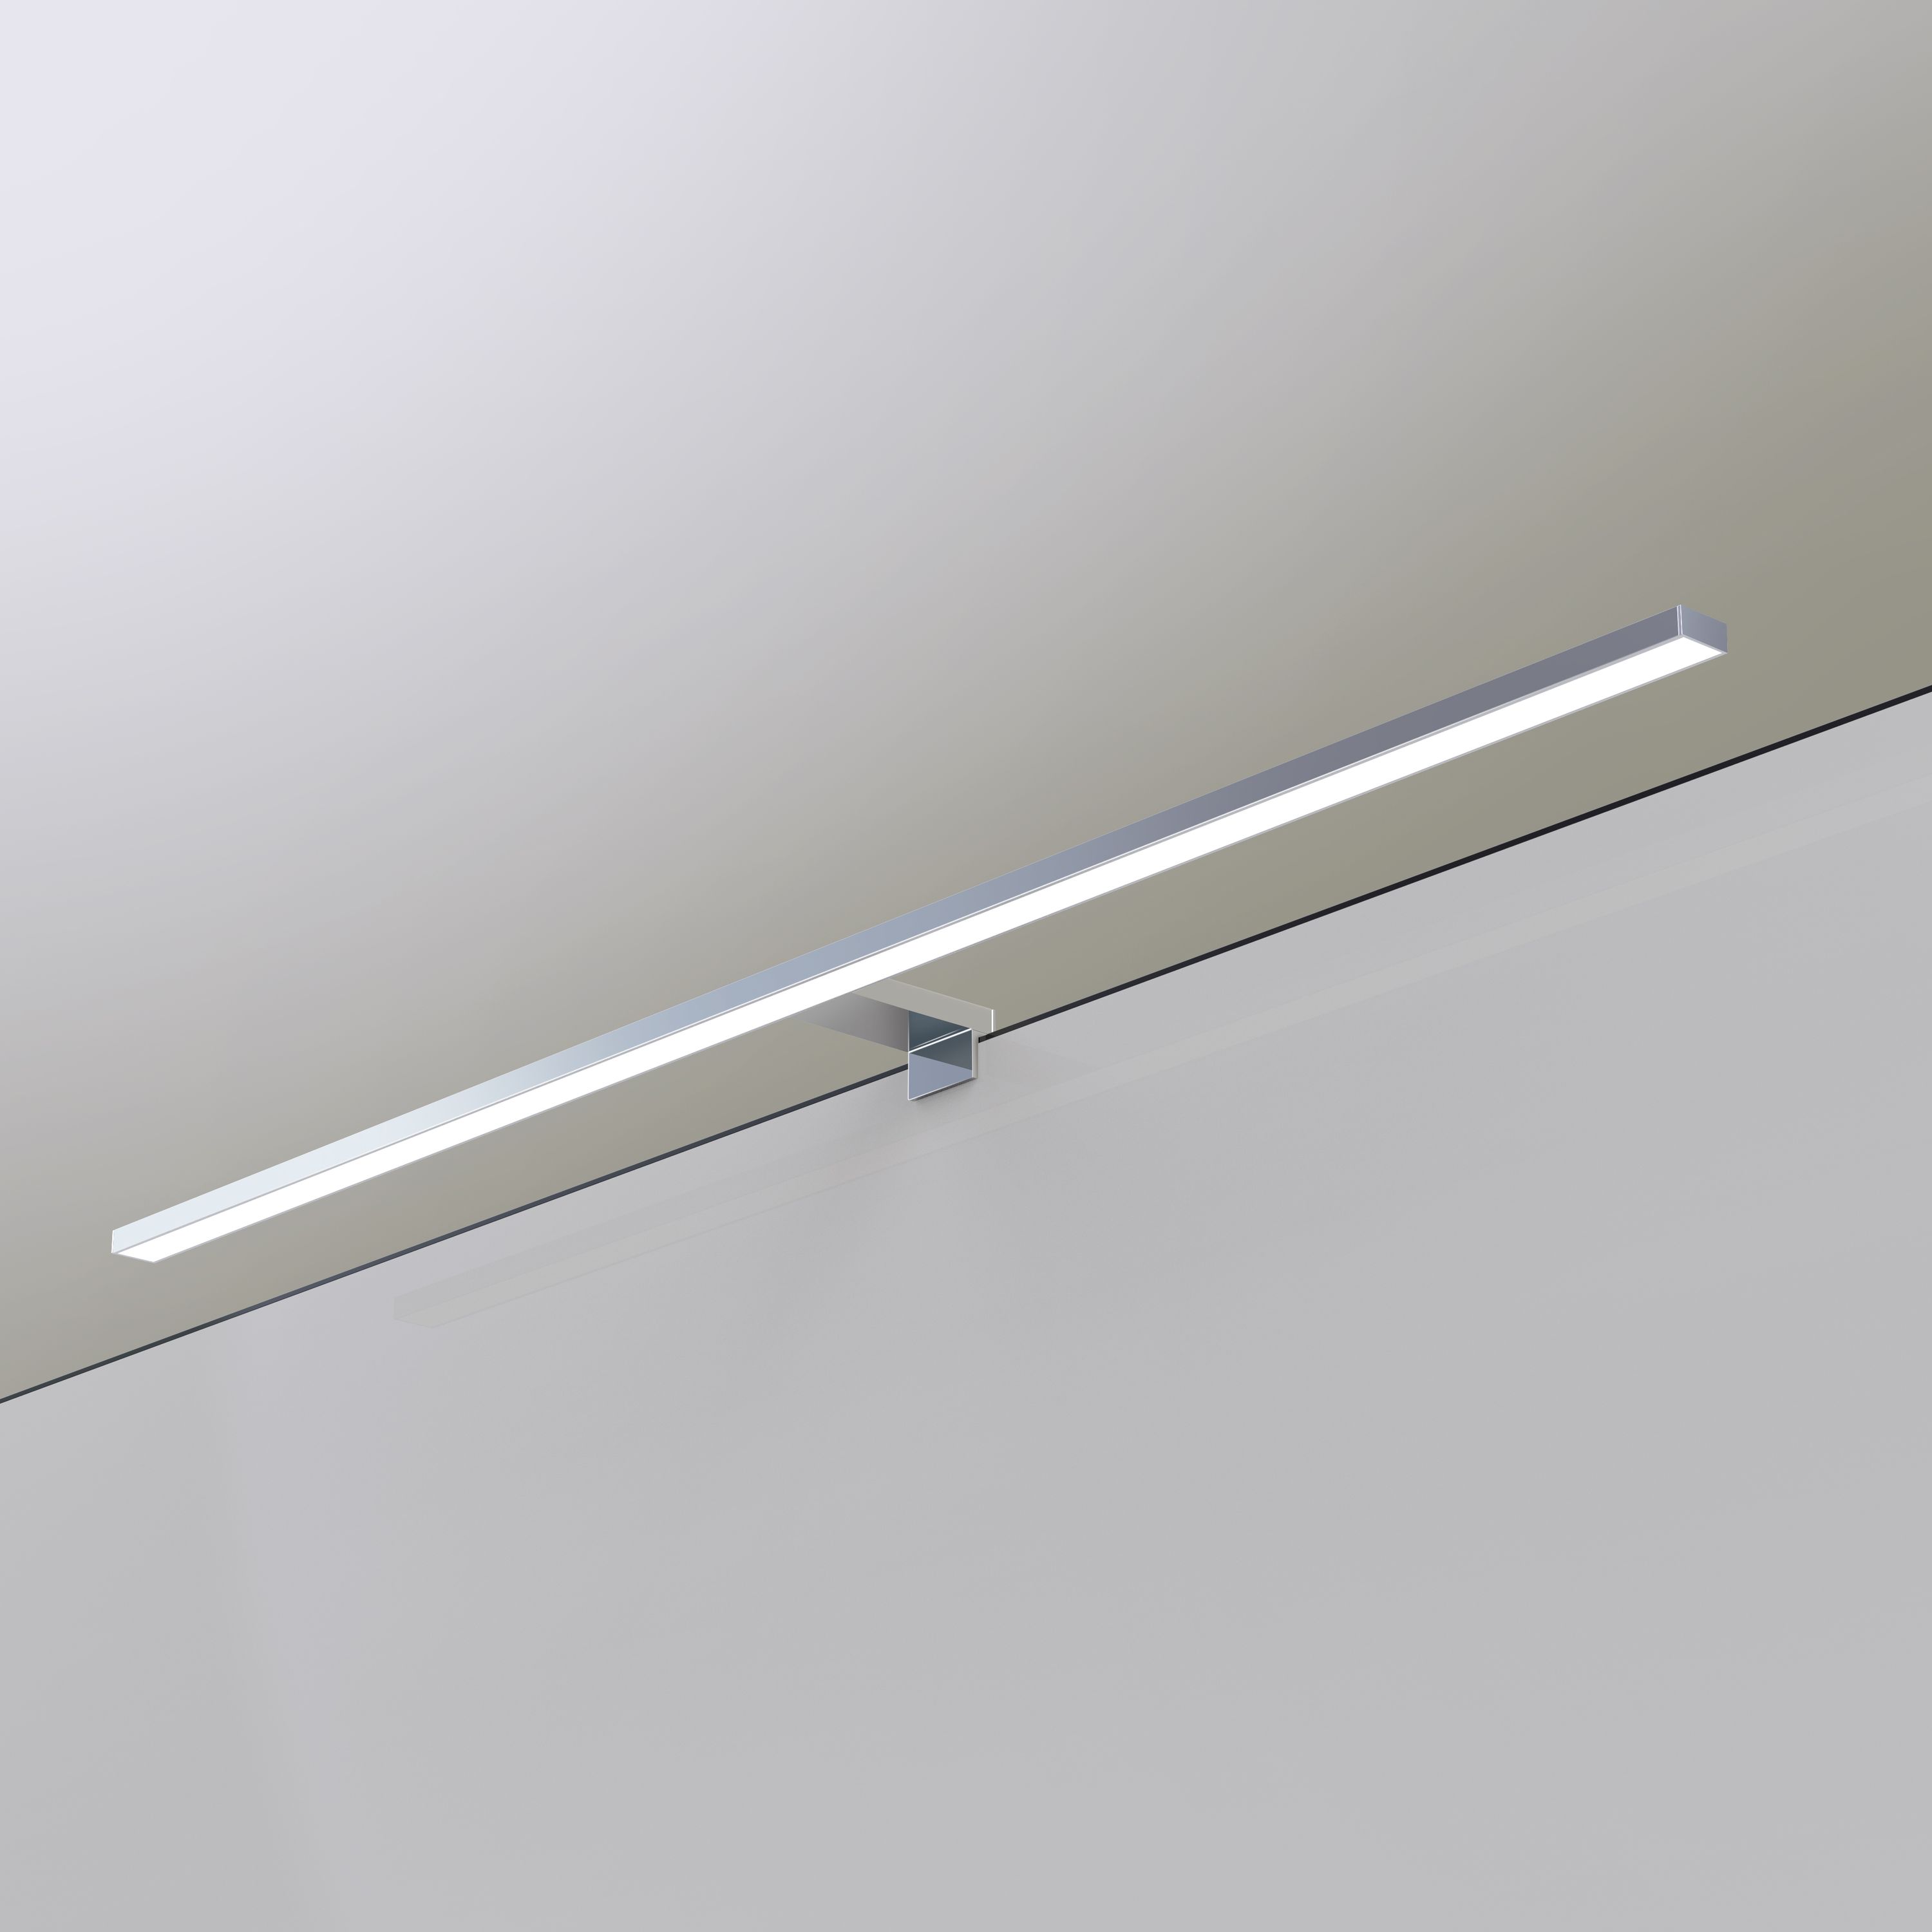 230V einkaufen Spiegelleuchte Möbel | kalb online 80cm LED Badleuchte Leuchten Spiegellampe | für neutralweiß, kalb-licht, verchromt Badlampe